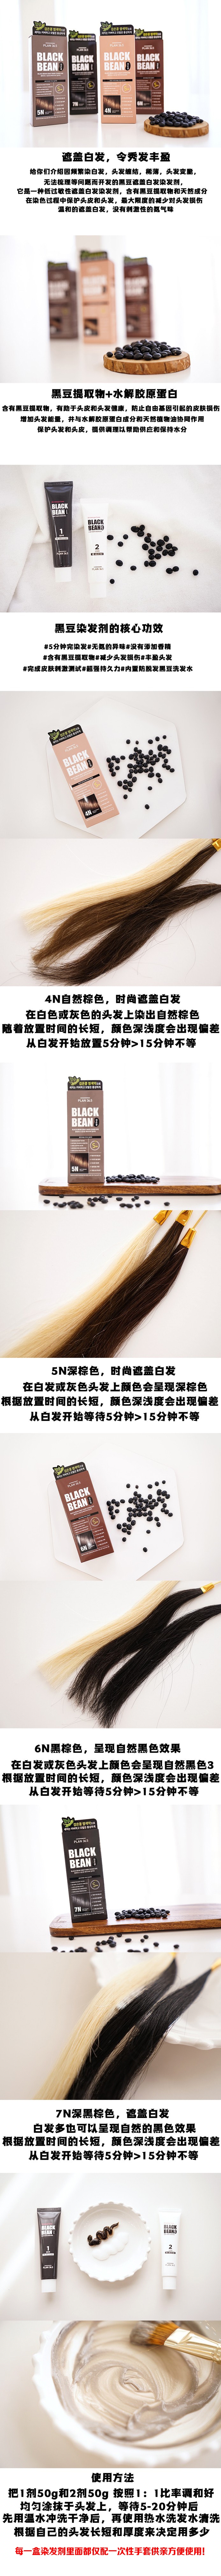 韩国 【黑豆染发】Plan 36.5 黑豆 防脱发滋润染发剂 可染白发 #6N 深棕色